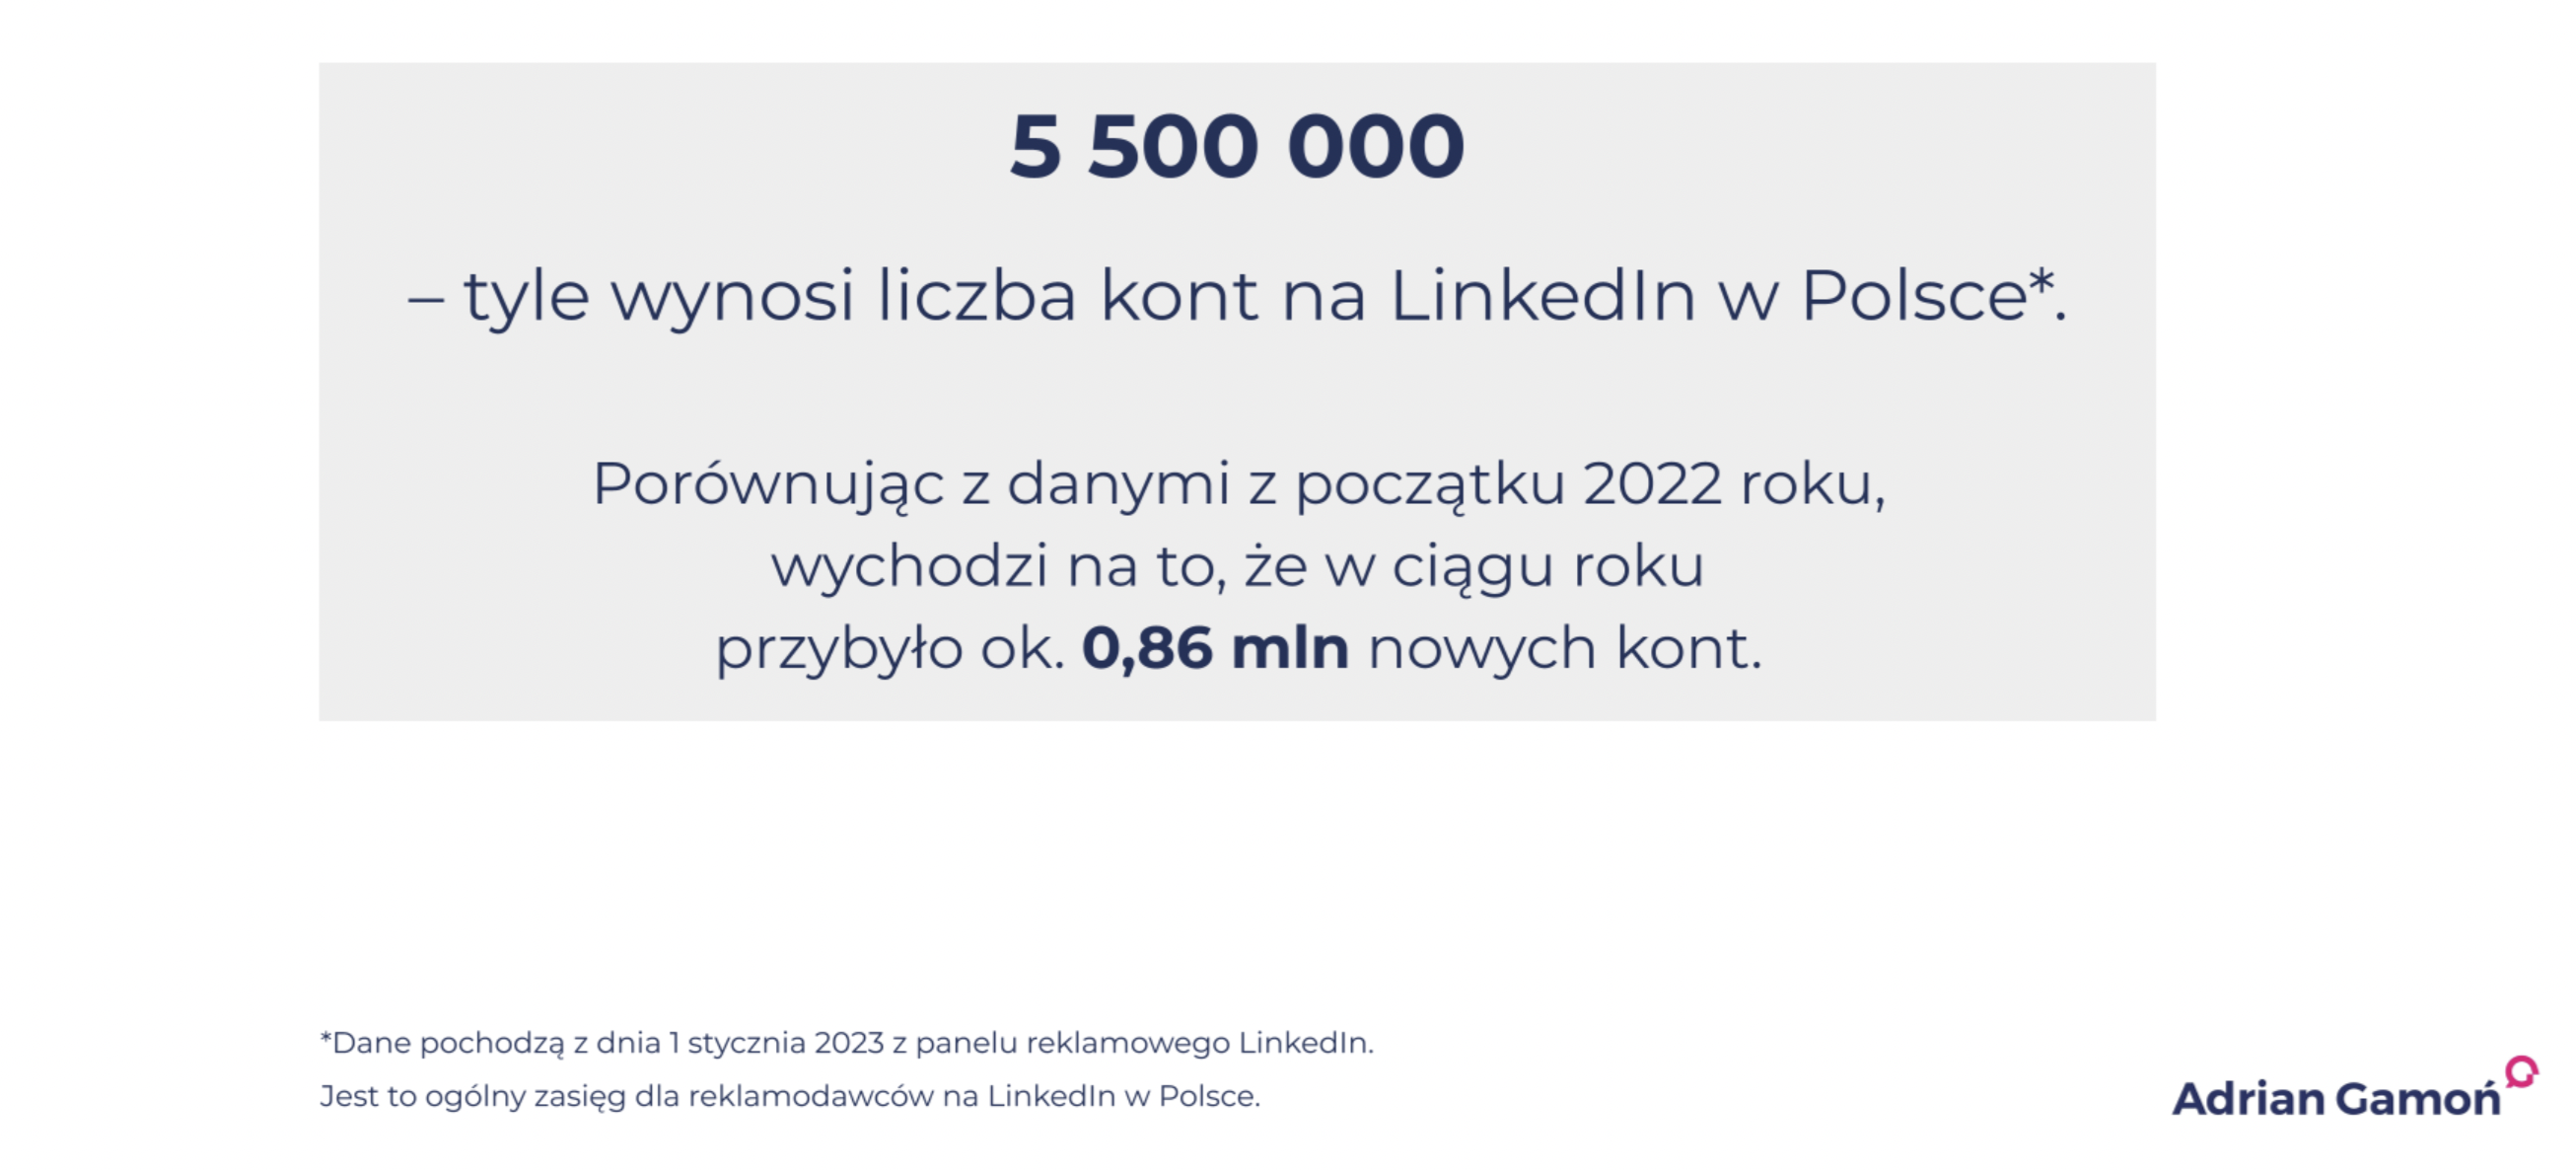 liczba kont na linkedinie w polsce w 2023 roku